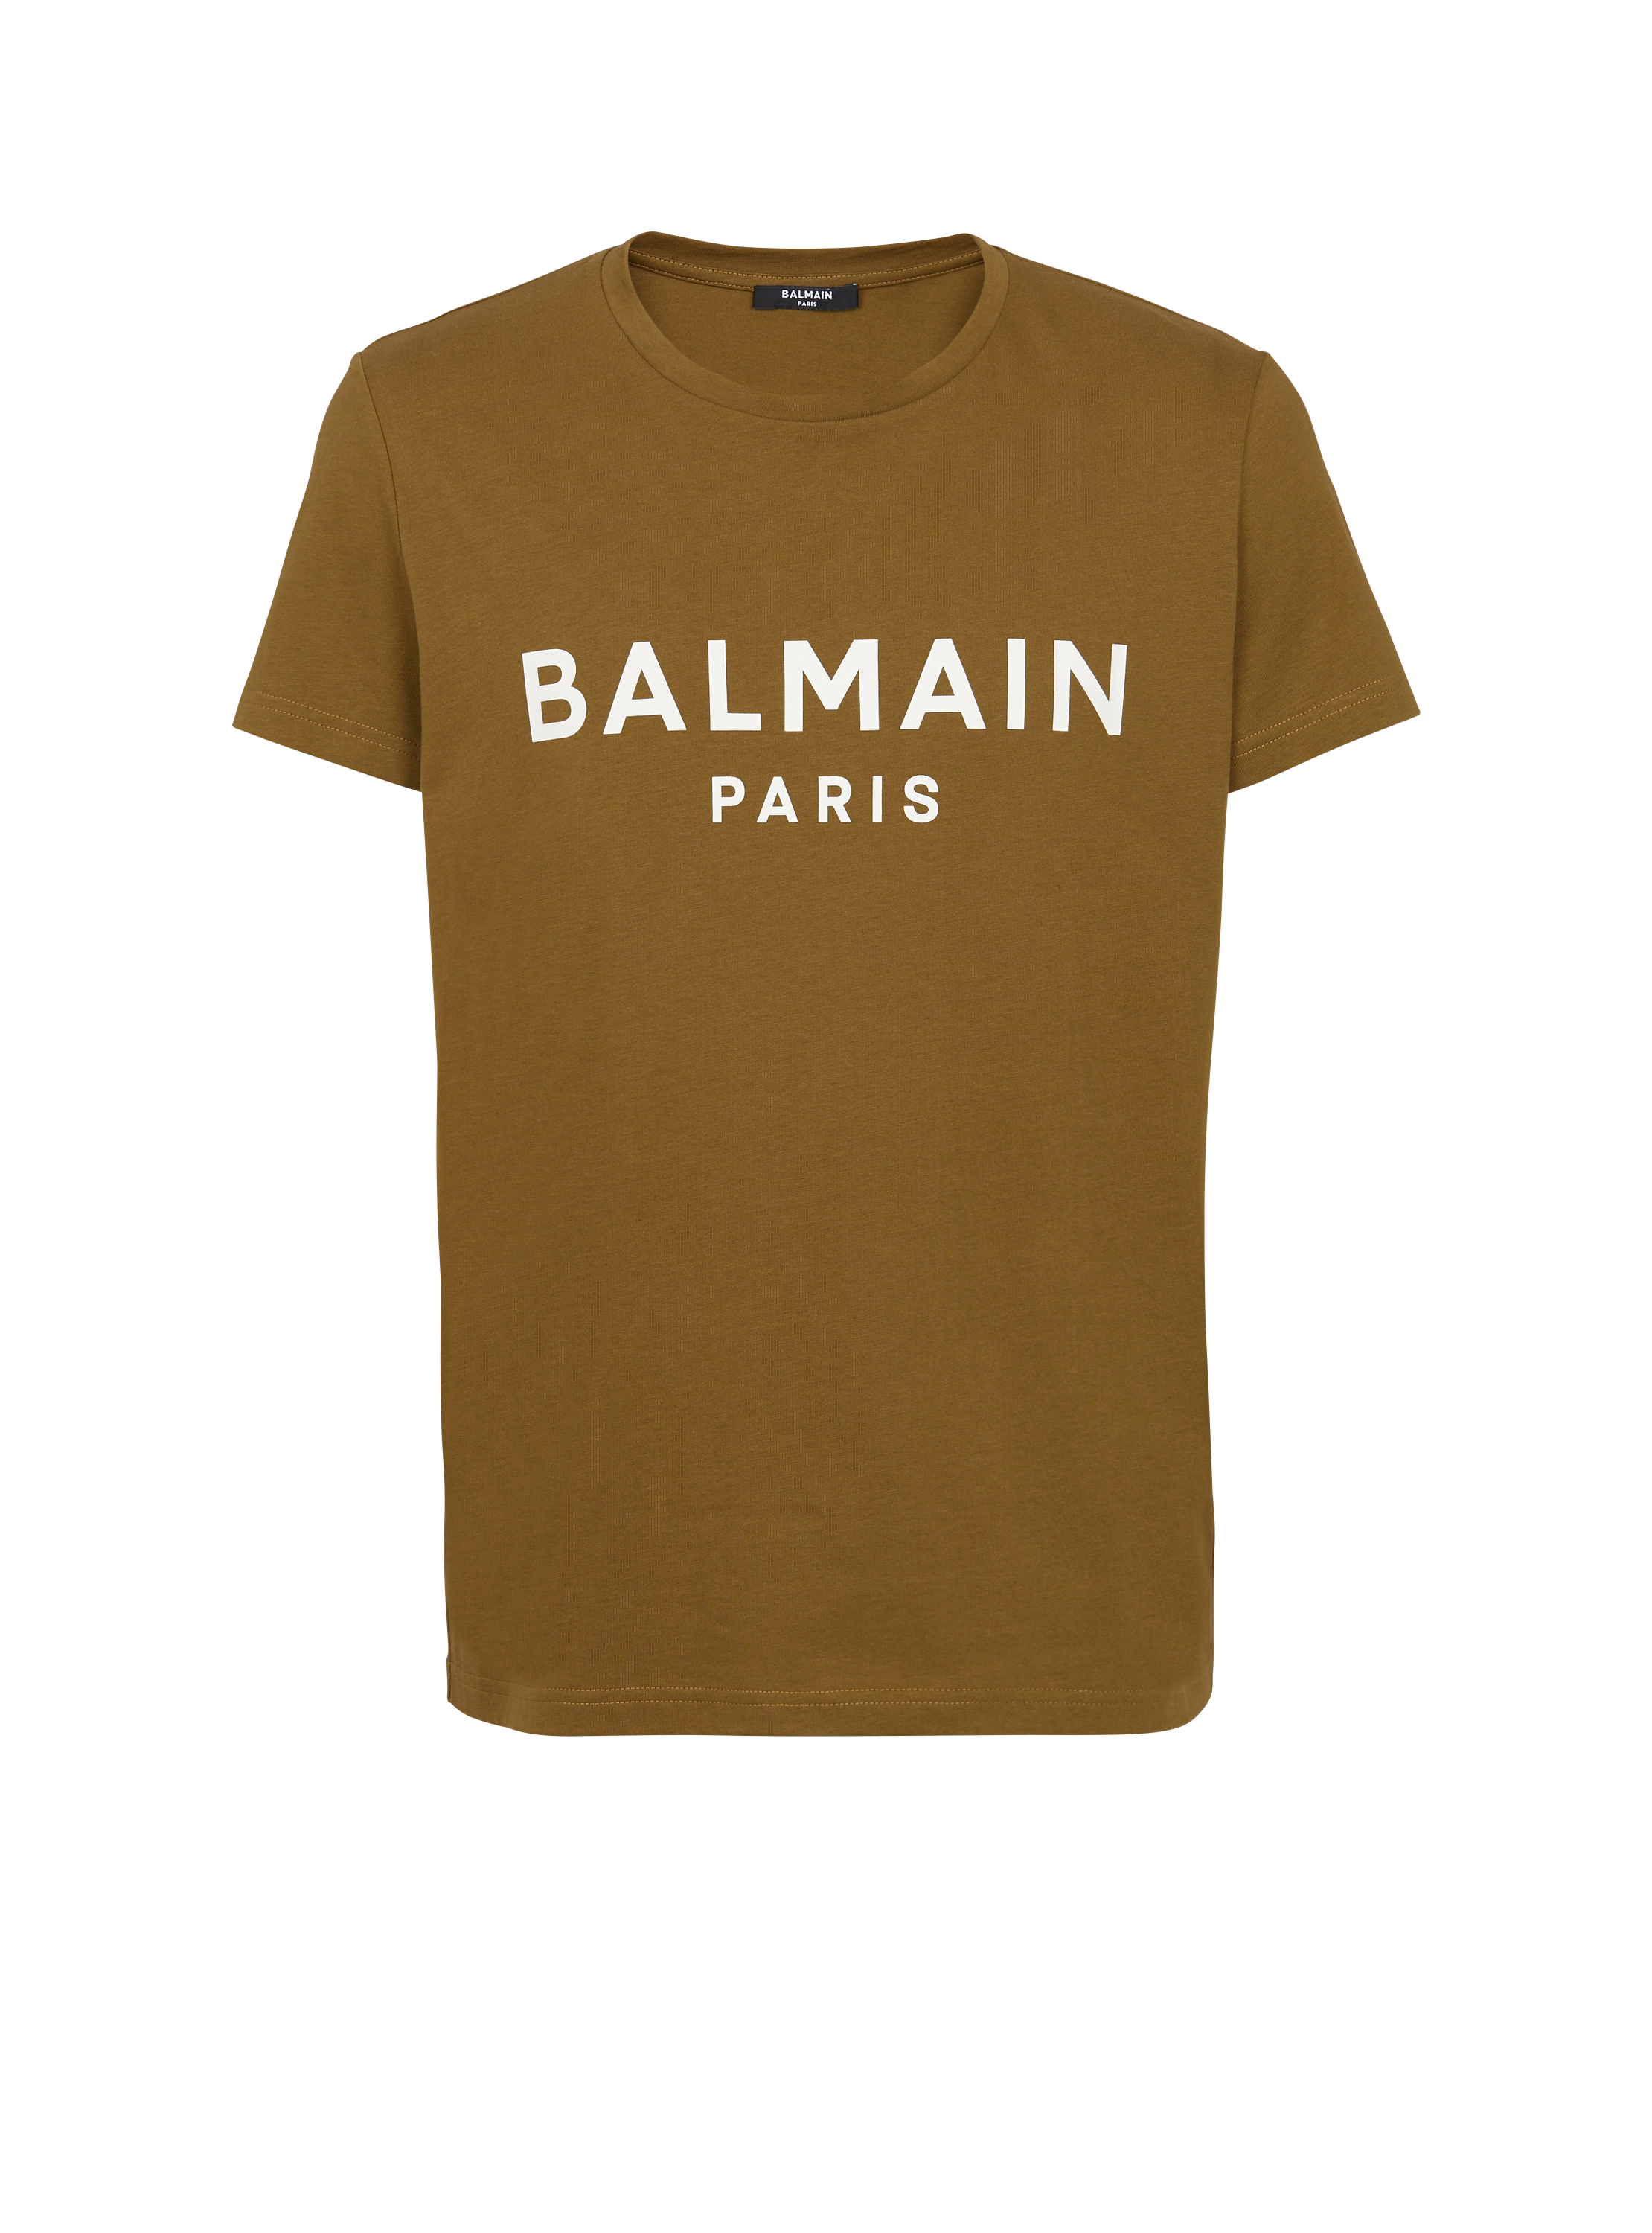 T-shirt en coton éco-responsable imprimé logo Balmain, kaki, hi-res